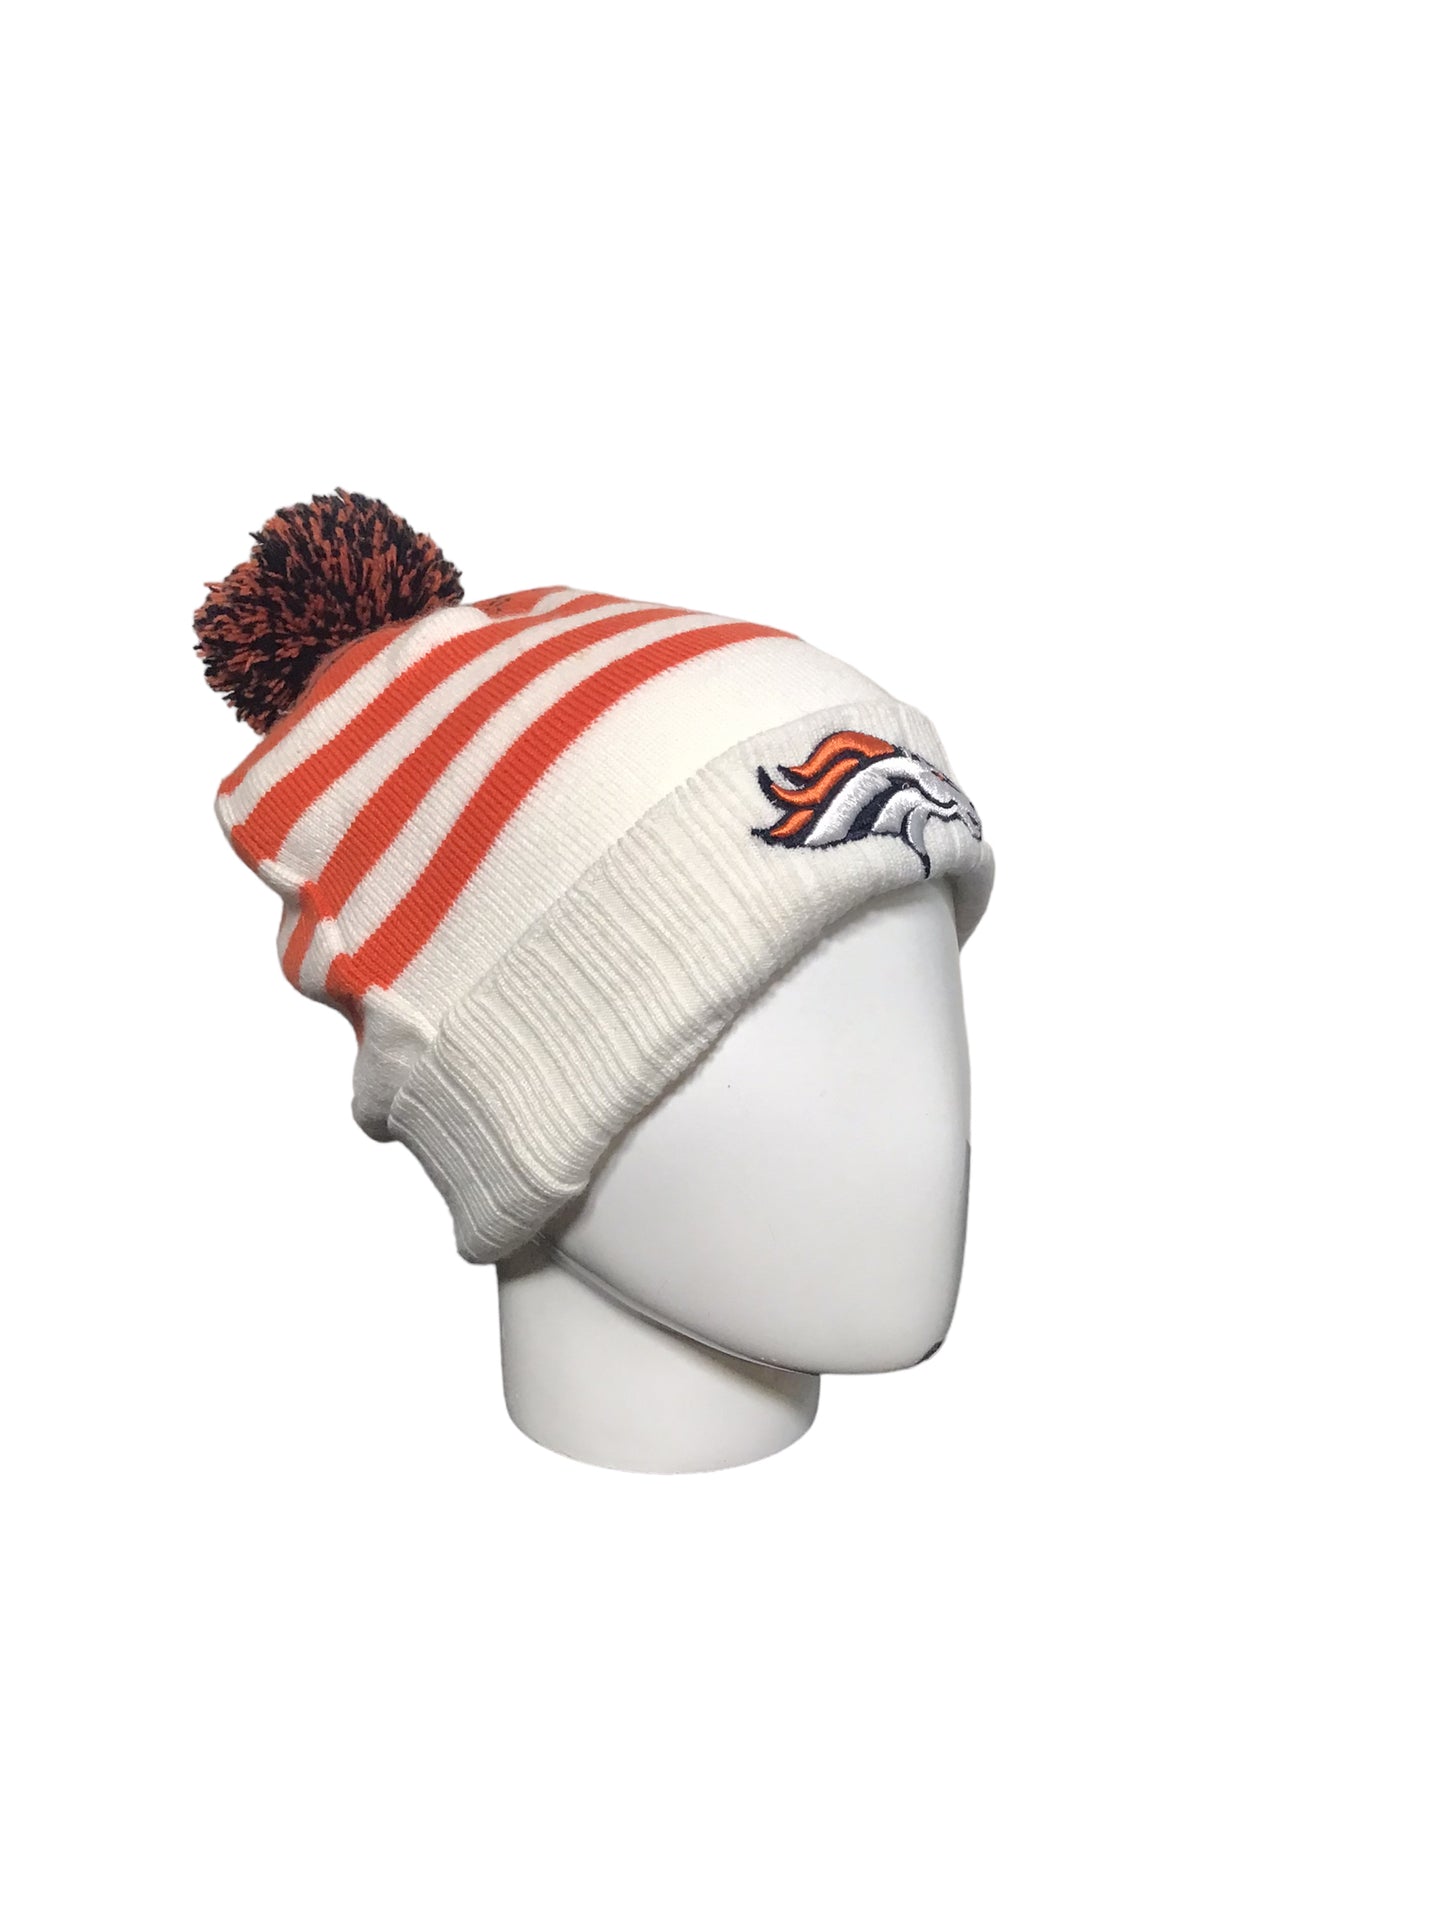 NFL Denver Broncos Winter Hat